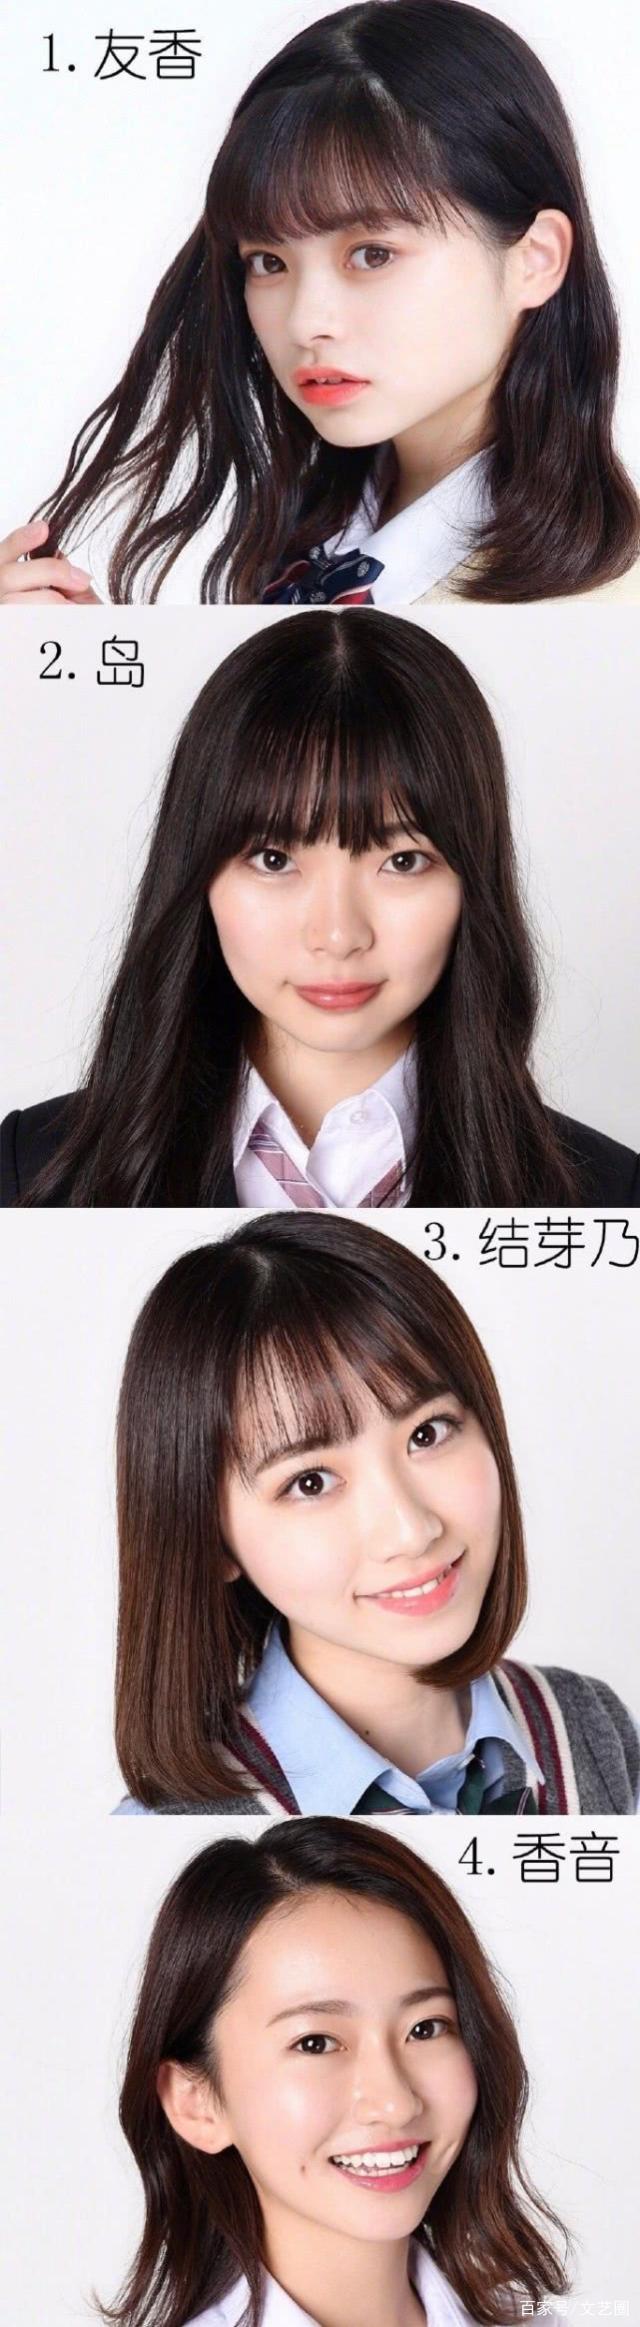 日本最可爱女高中生大赛选手照前11名曝光却被狂吐槽